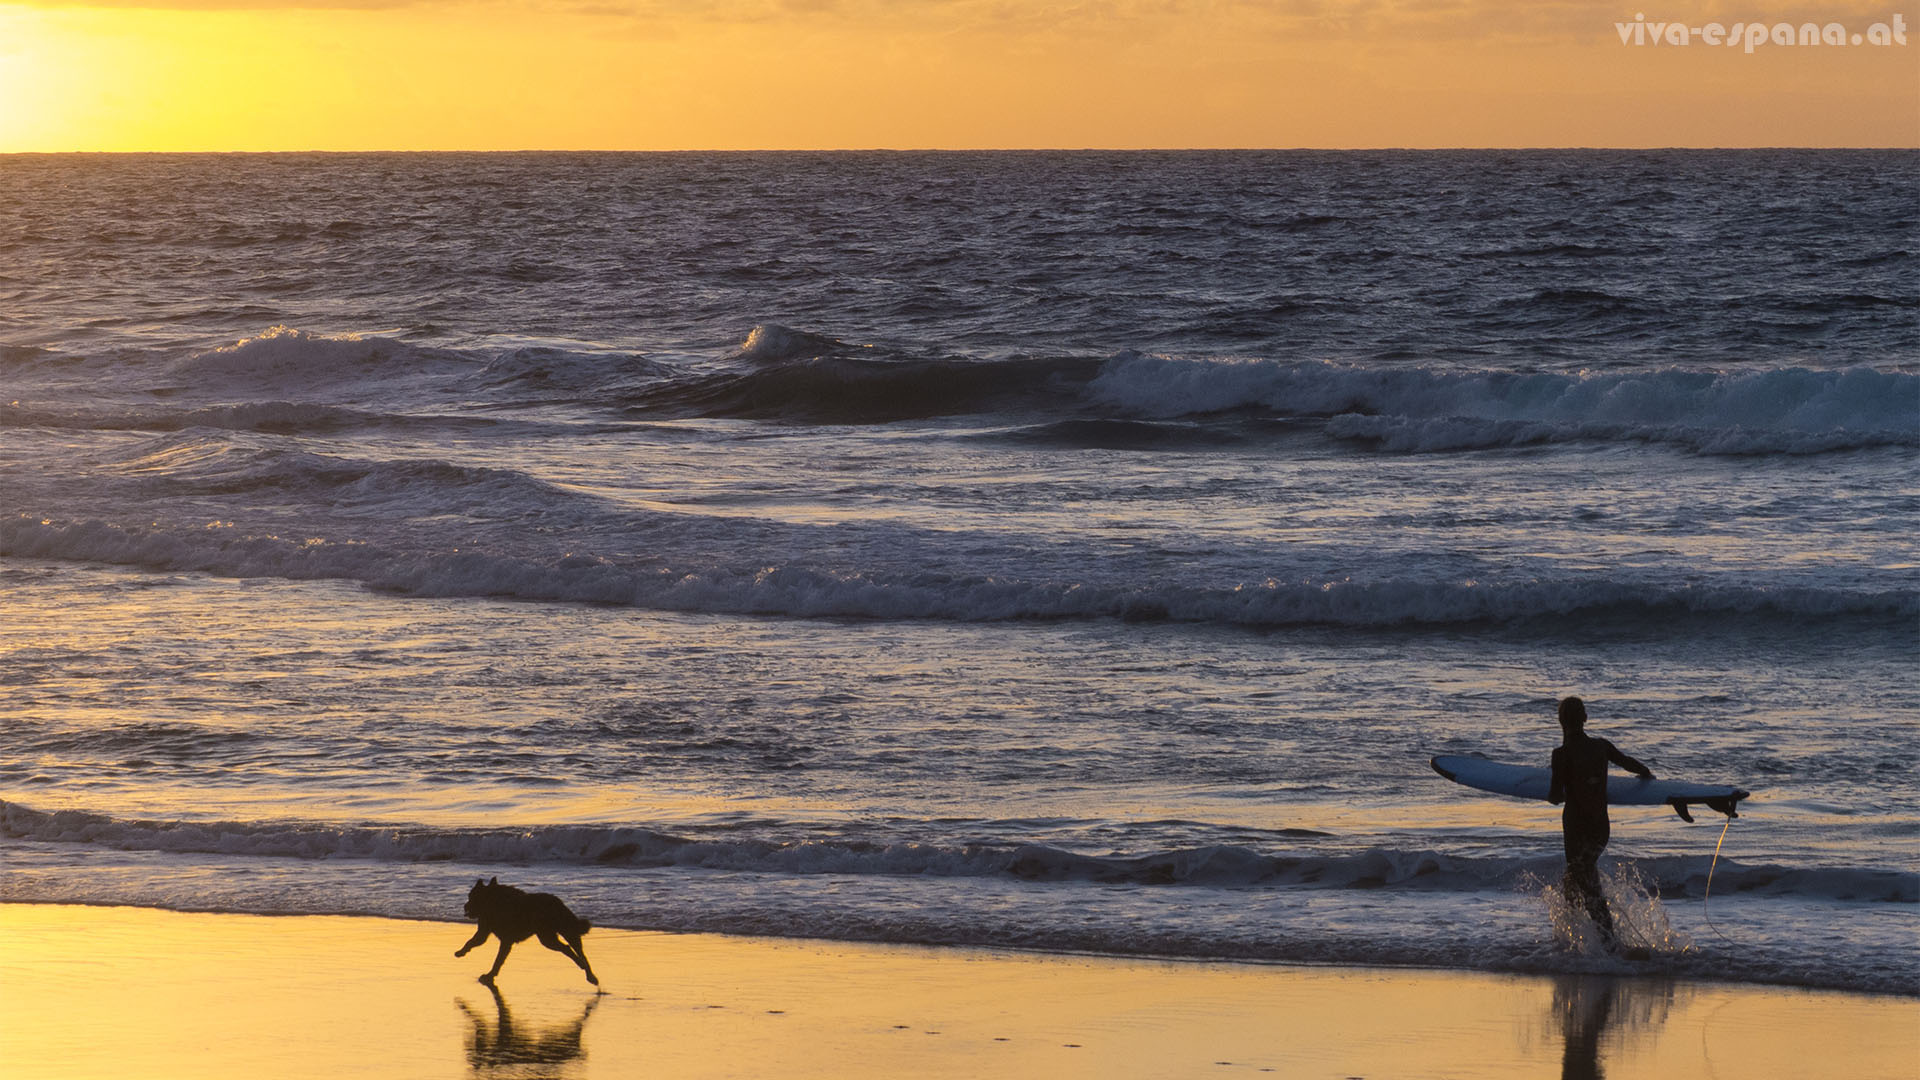 Surfen mit dem besten Freund bei Sonnenuntergang – was ist schöner.